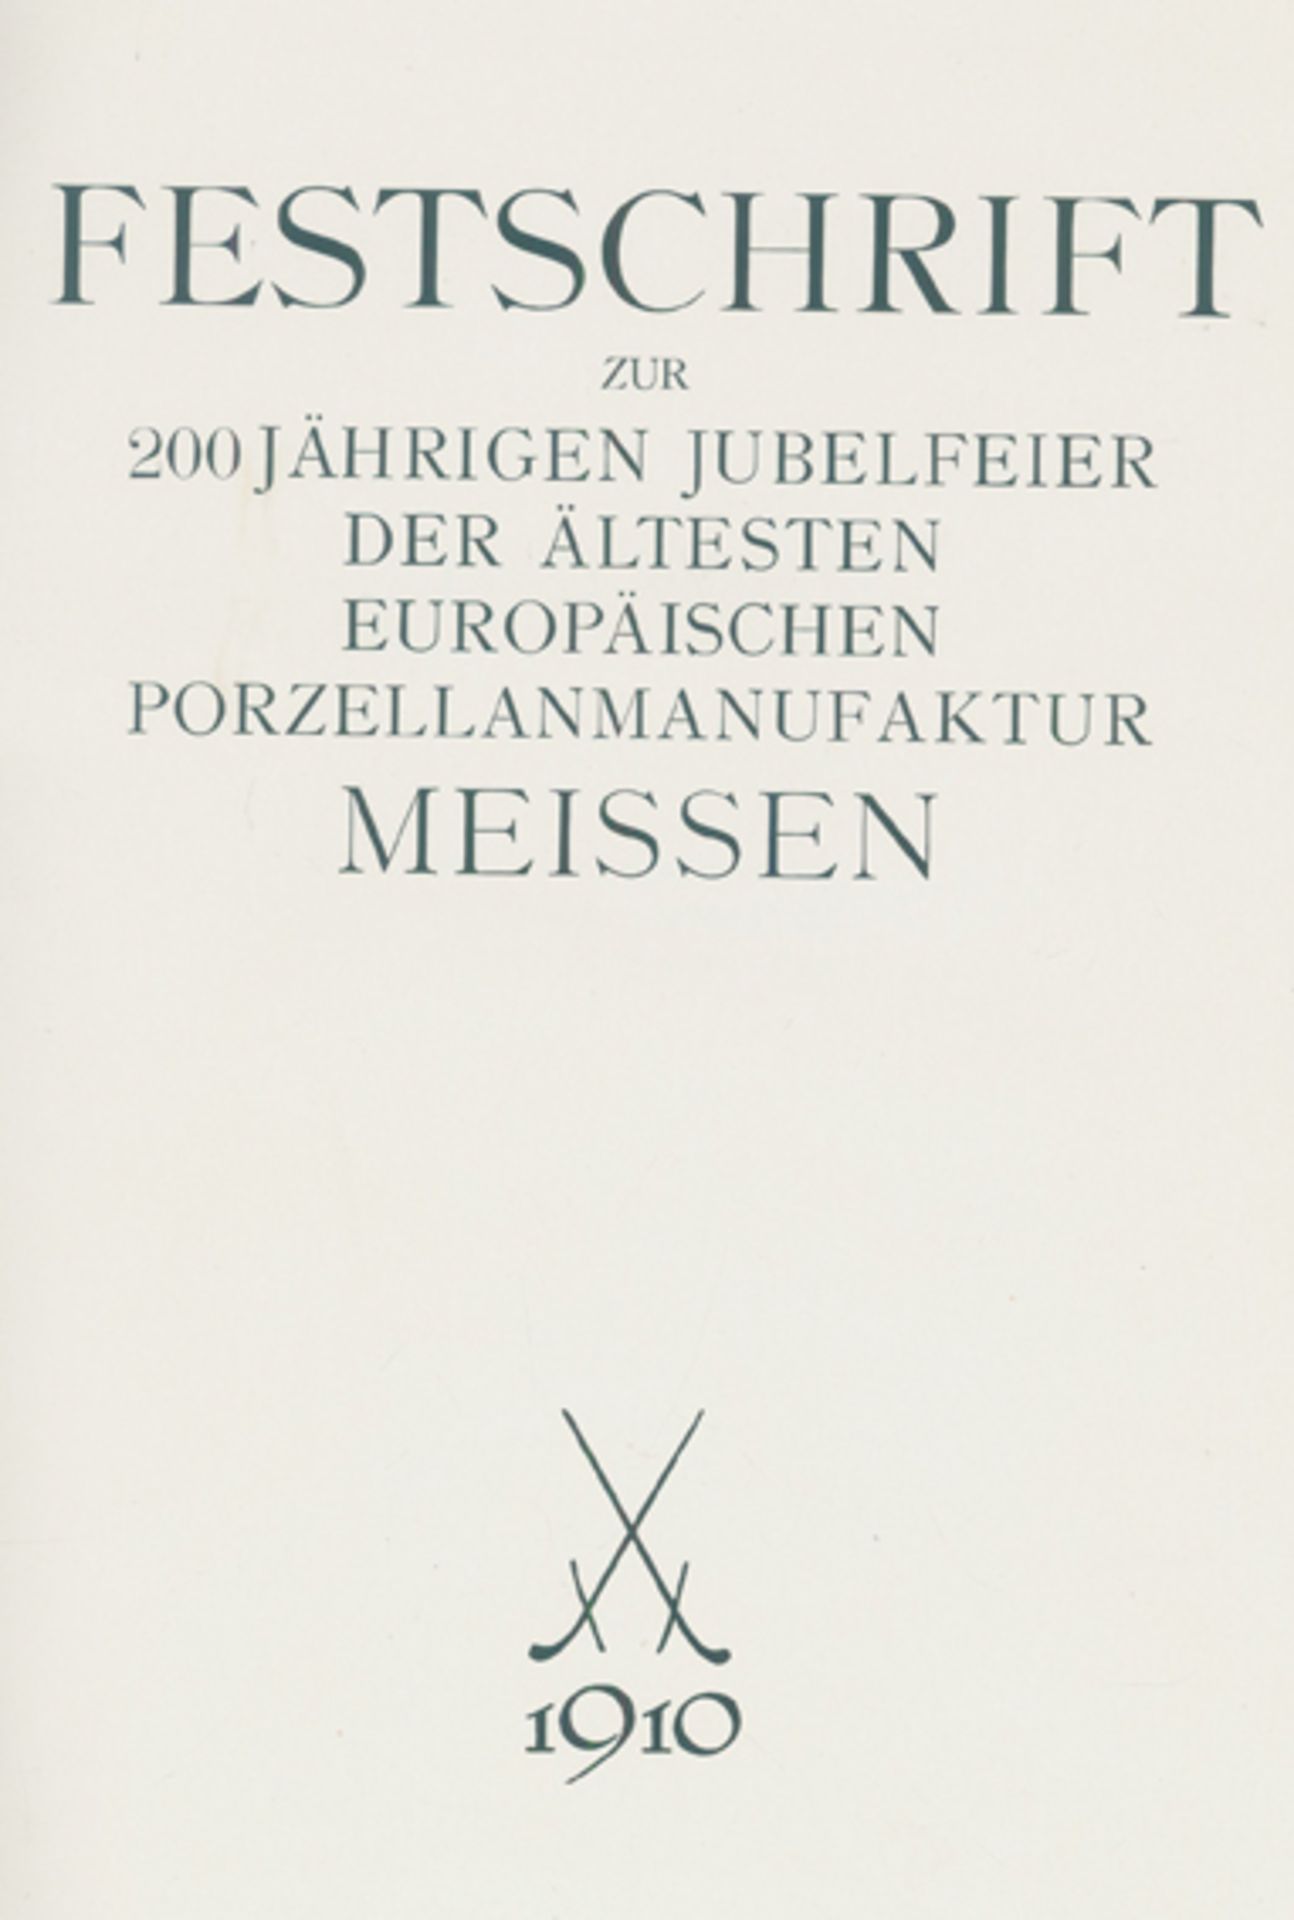 Festschrift zur 200jährigen Jubelfeier